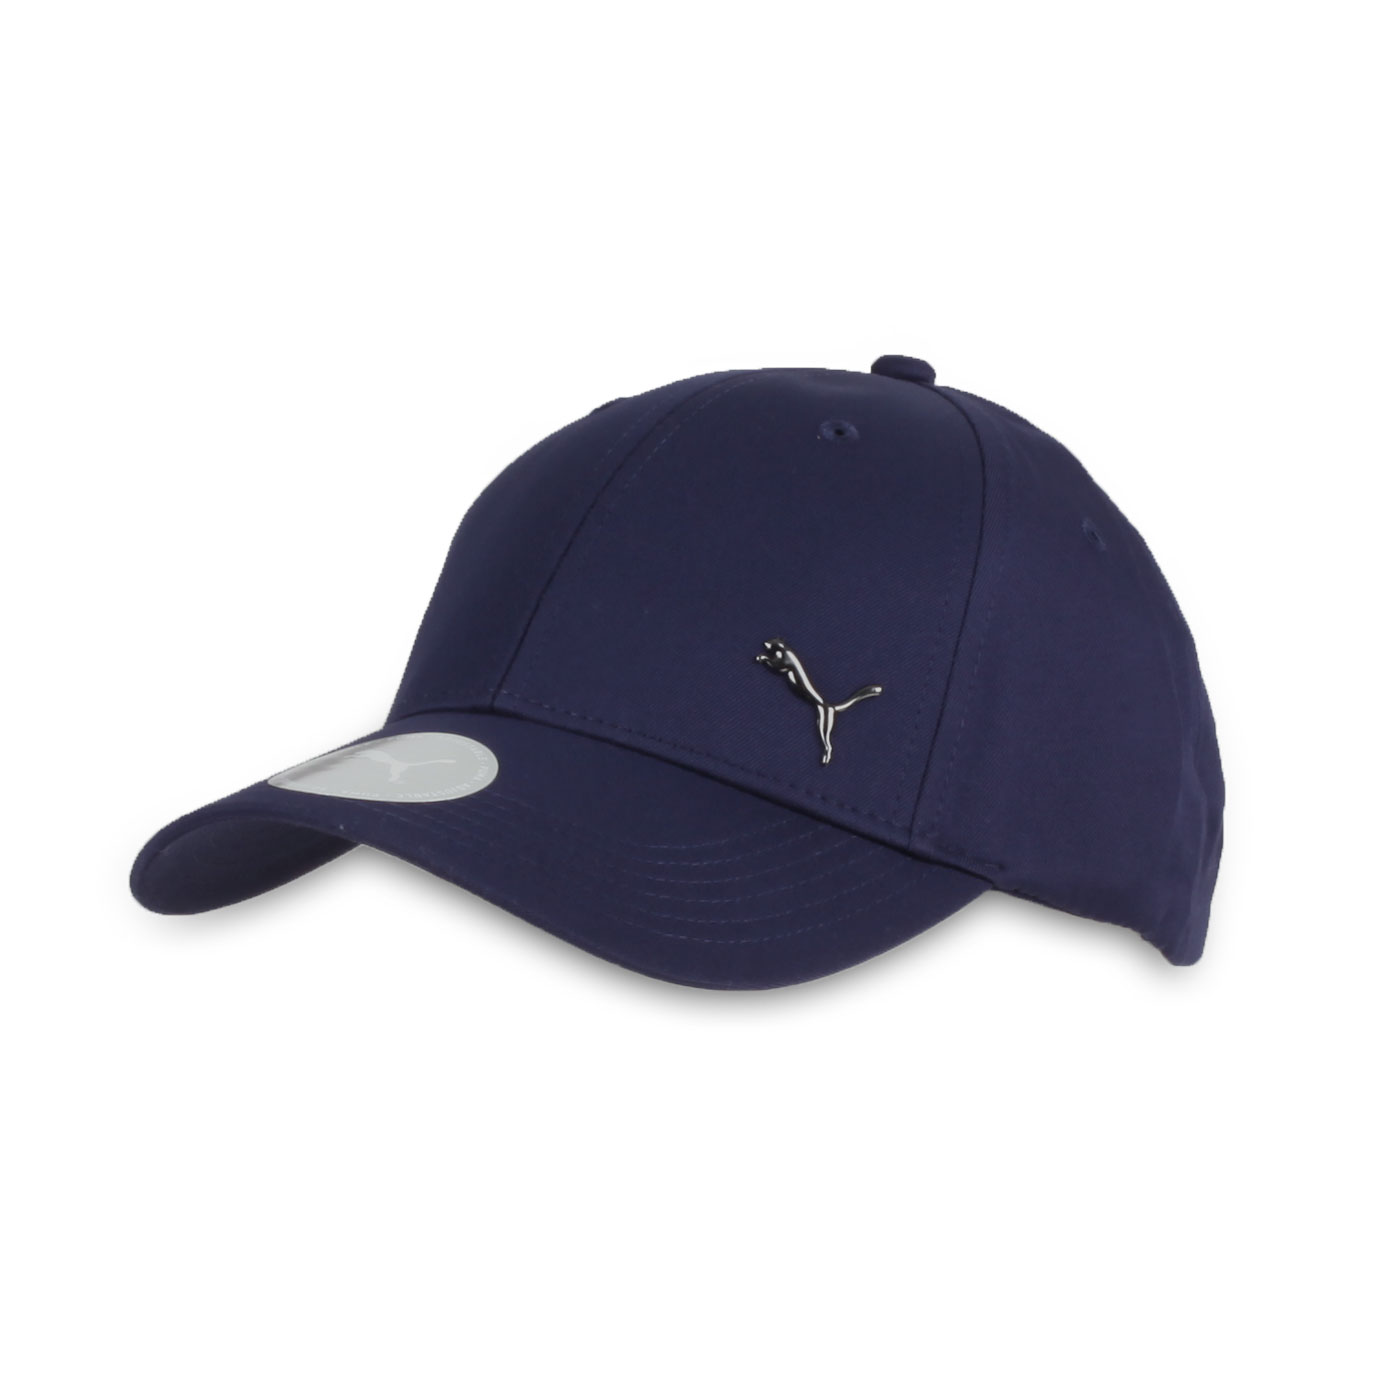 PUMA 基本系列棒球帽 02126901 - 丈青